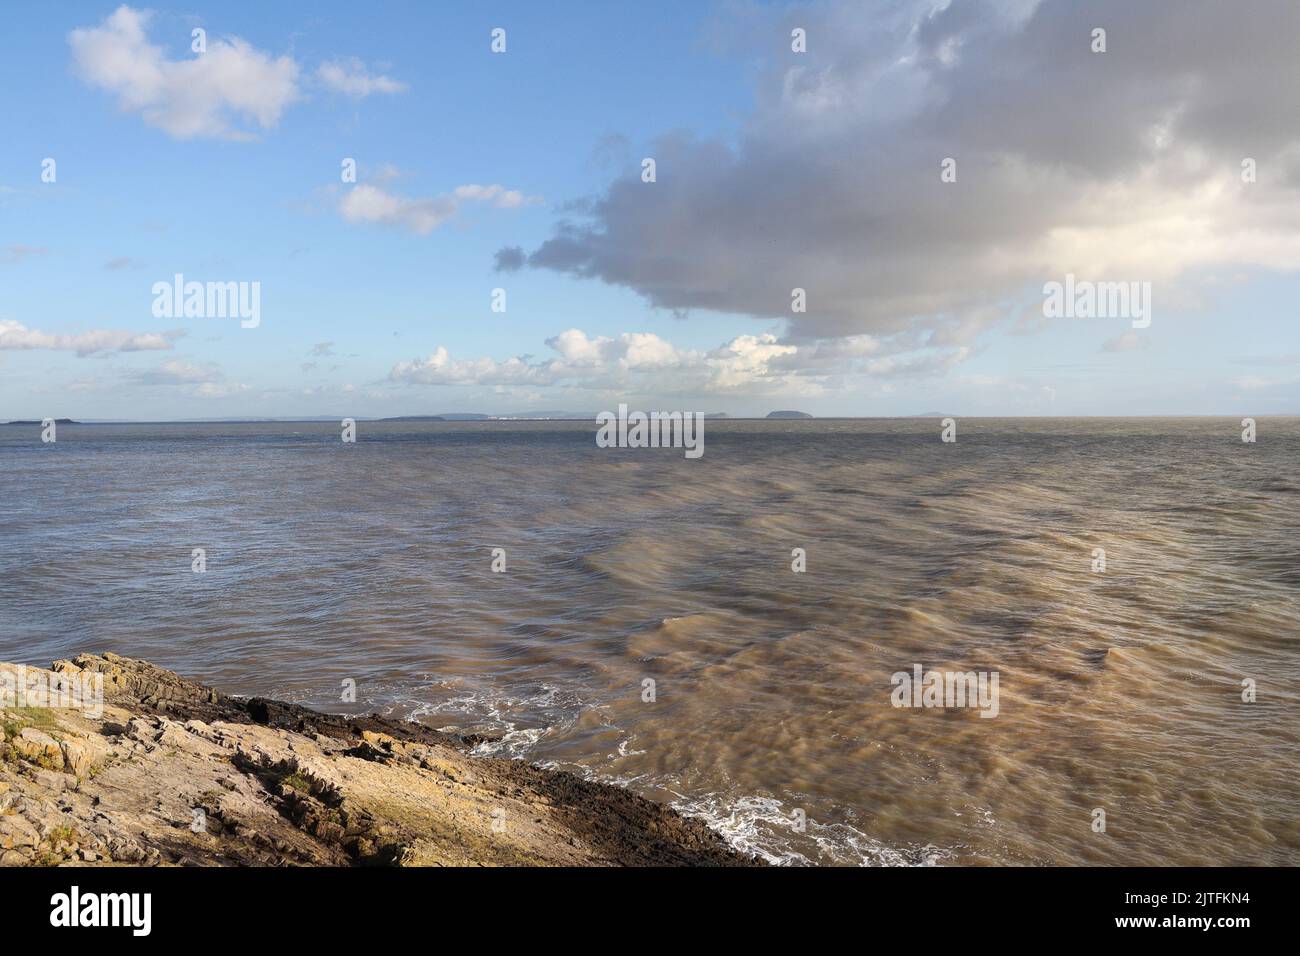 Die Severn-Mündung von Barry Island, Wales Coast, UK, welsh Coastline. Britische Küste. Landschaftlich schöner Blick auf Meer und Himmel Stockfoto